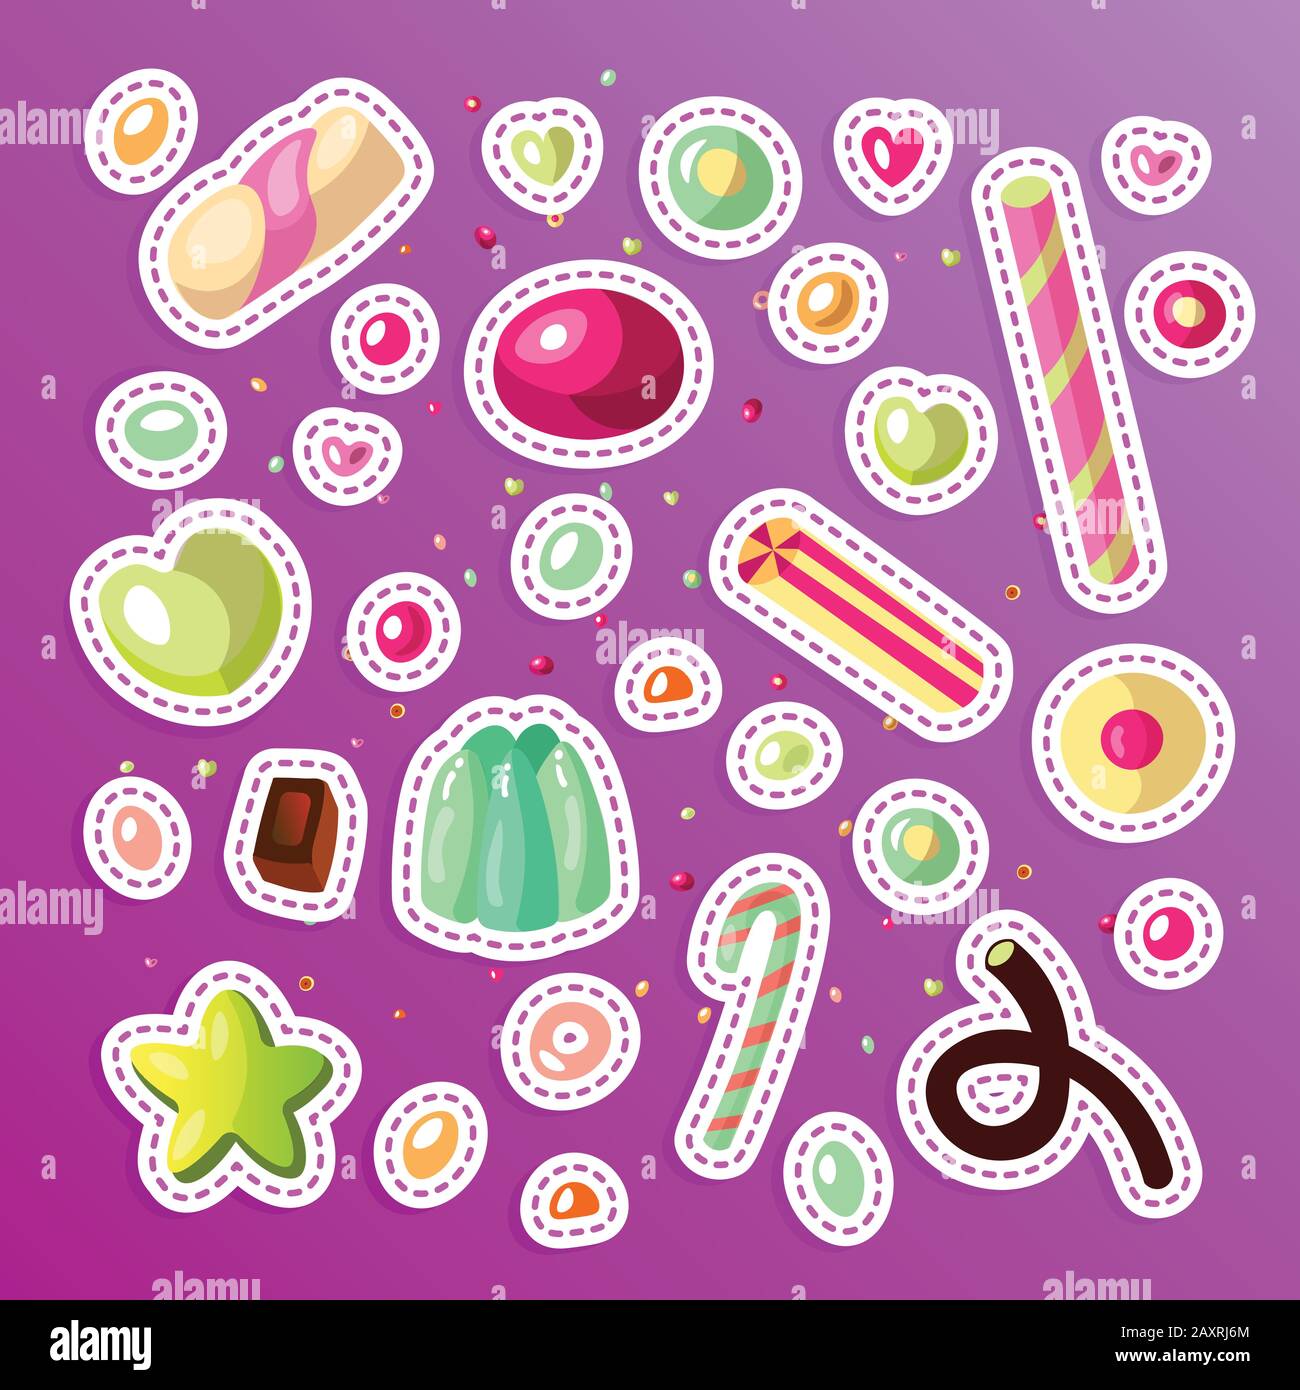 Süße cartoon Candy eingestellt. Sammlung von Süßigkeiten, Cartoon Stil. Gelee, Süßigkeiten, Kuchen, süße Krapfen und Marmelade. Riesige Menge von Cartoon doodle Form Bonbons Stock Vektor